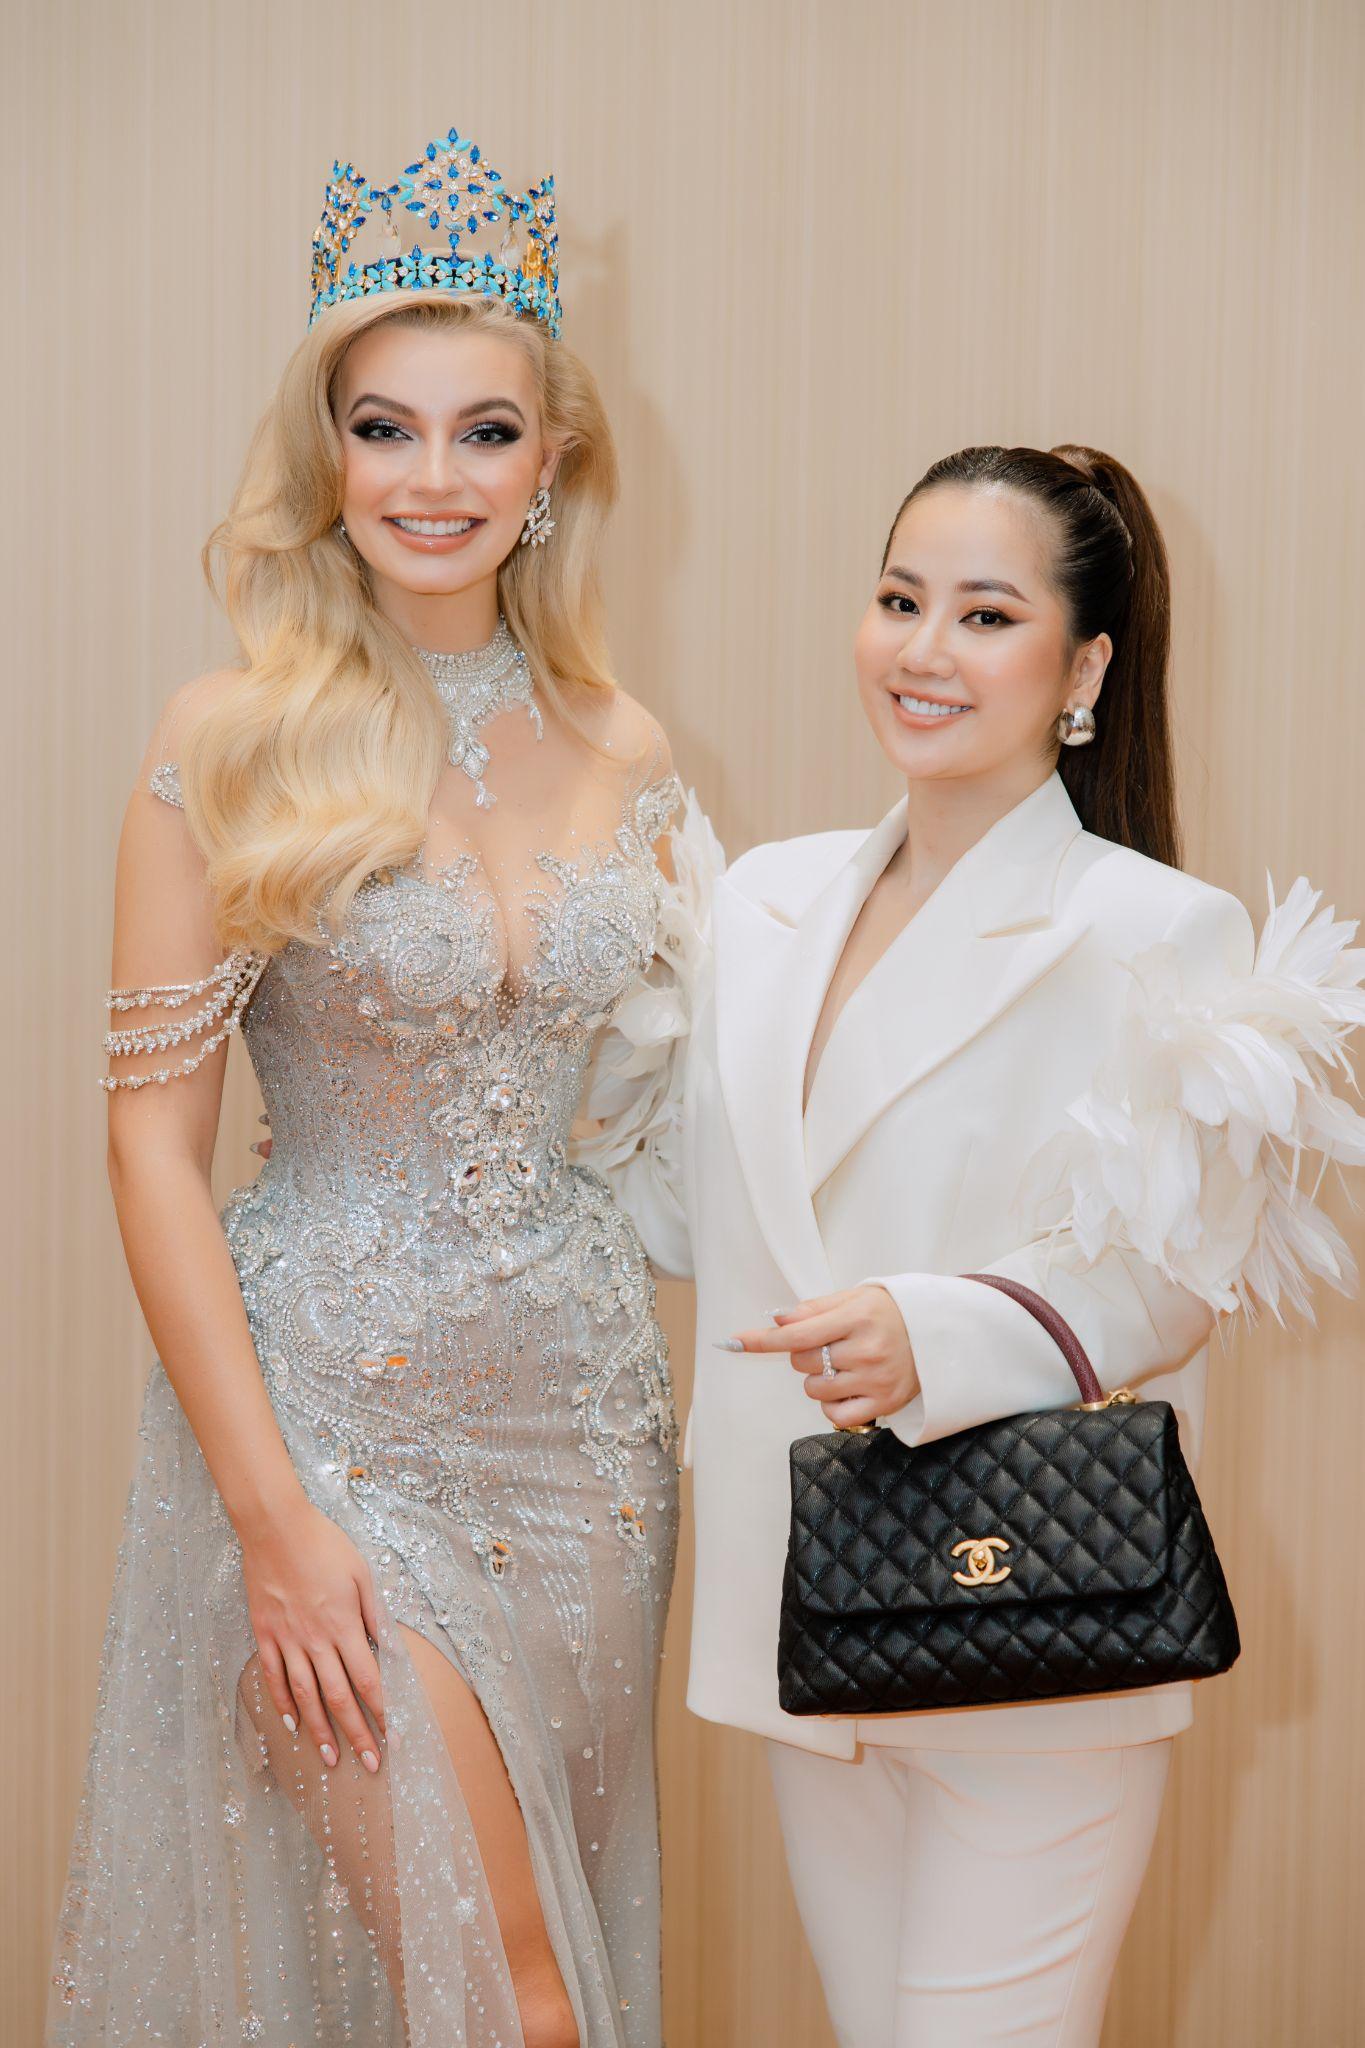 CEO Ngân Thị đấu giá thành công đầm dạ hội của nhà thiết kế Đỗ Long tại đêm gala từ thiện Beauty With A Purpose - Ảnh 7.